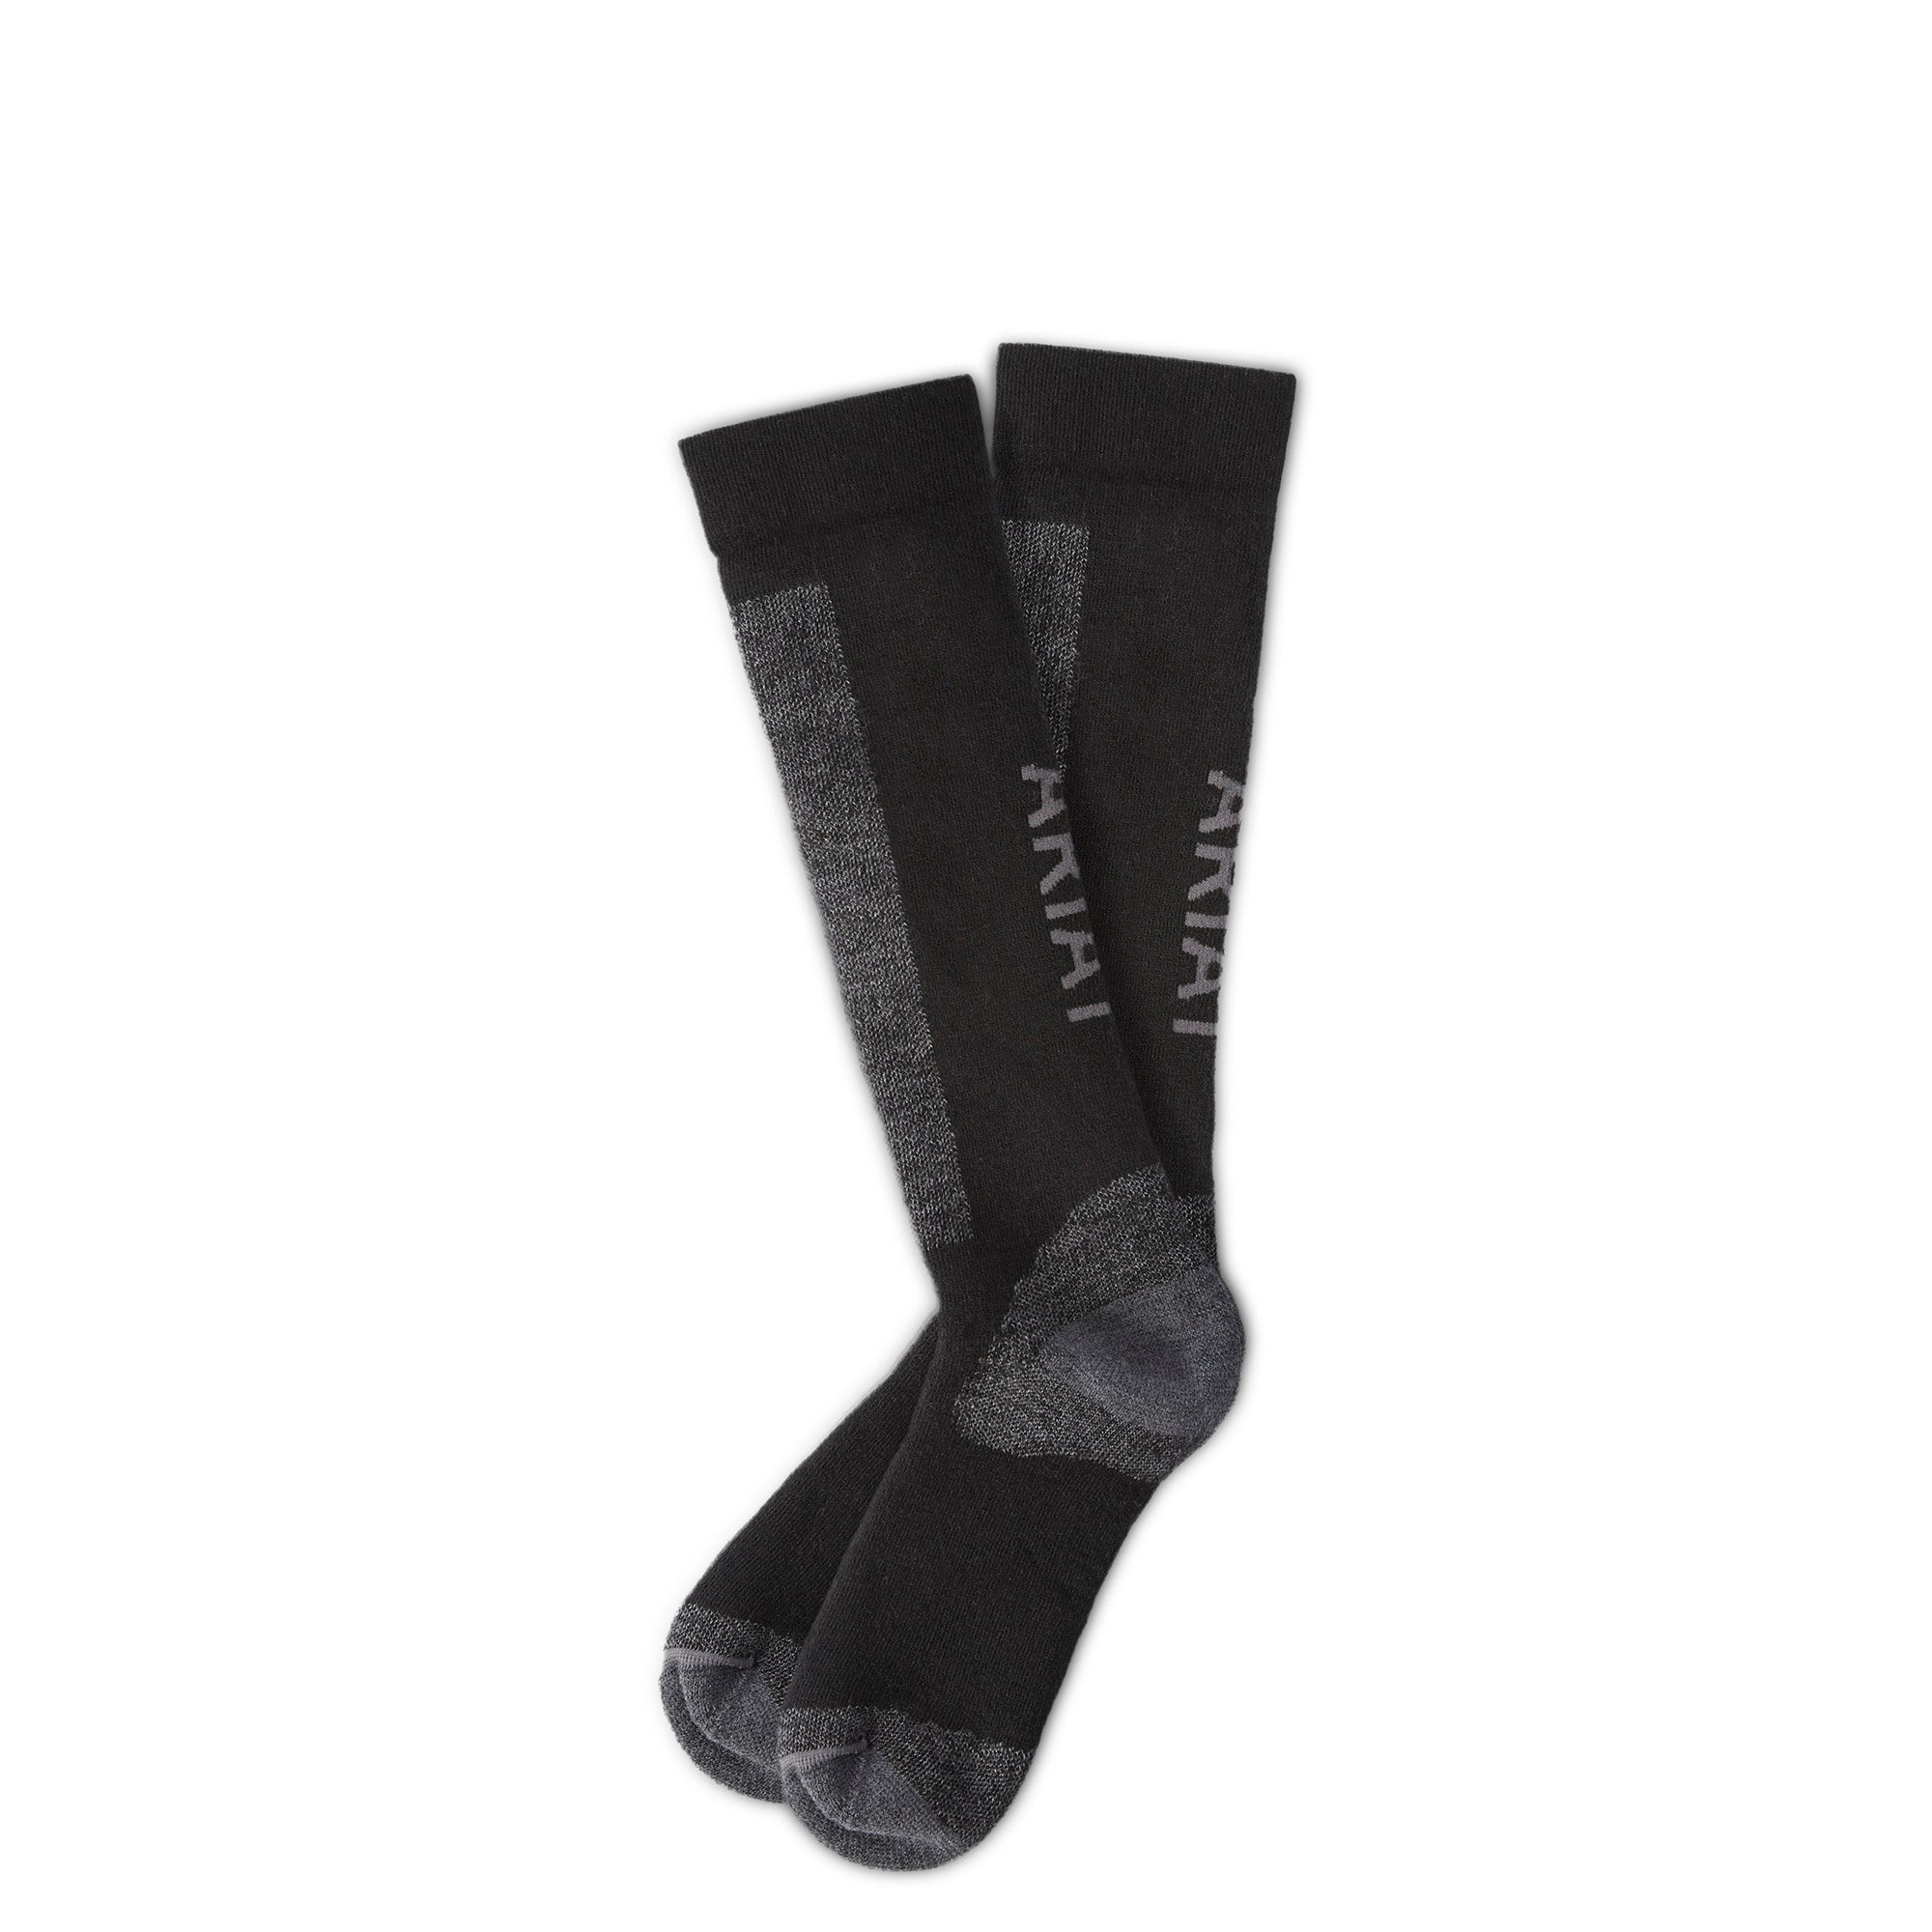 Western Stiefel ADT AriatTEK Merino Socks black/grey | 10037887